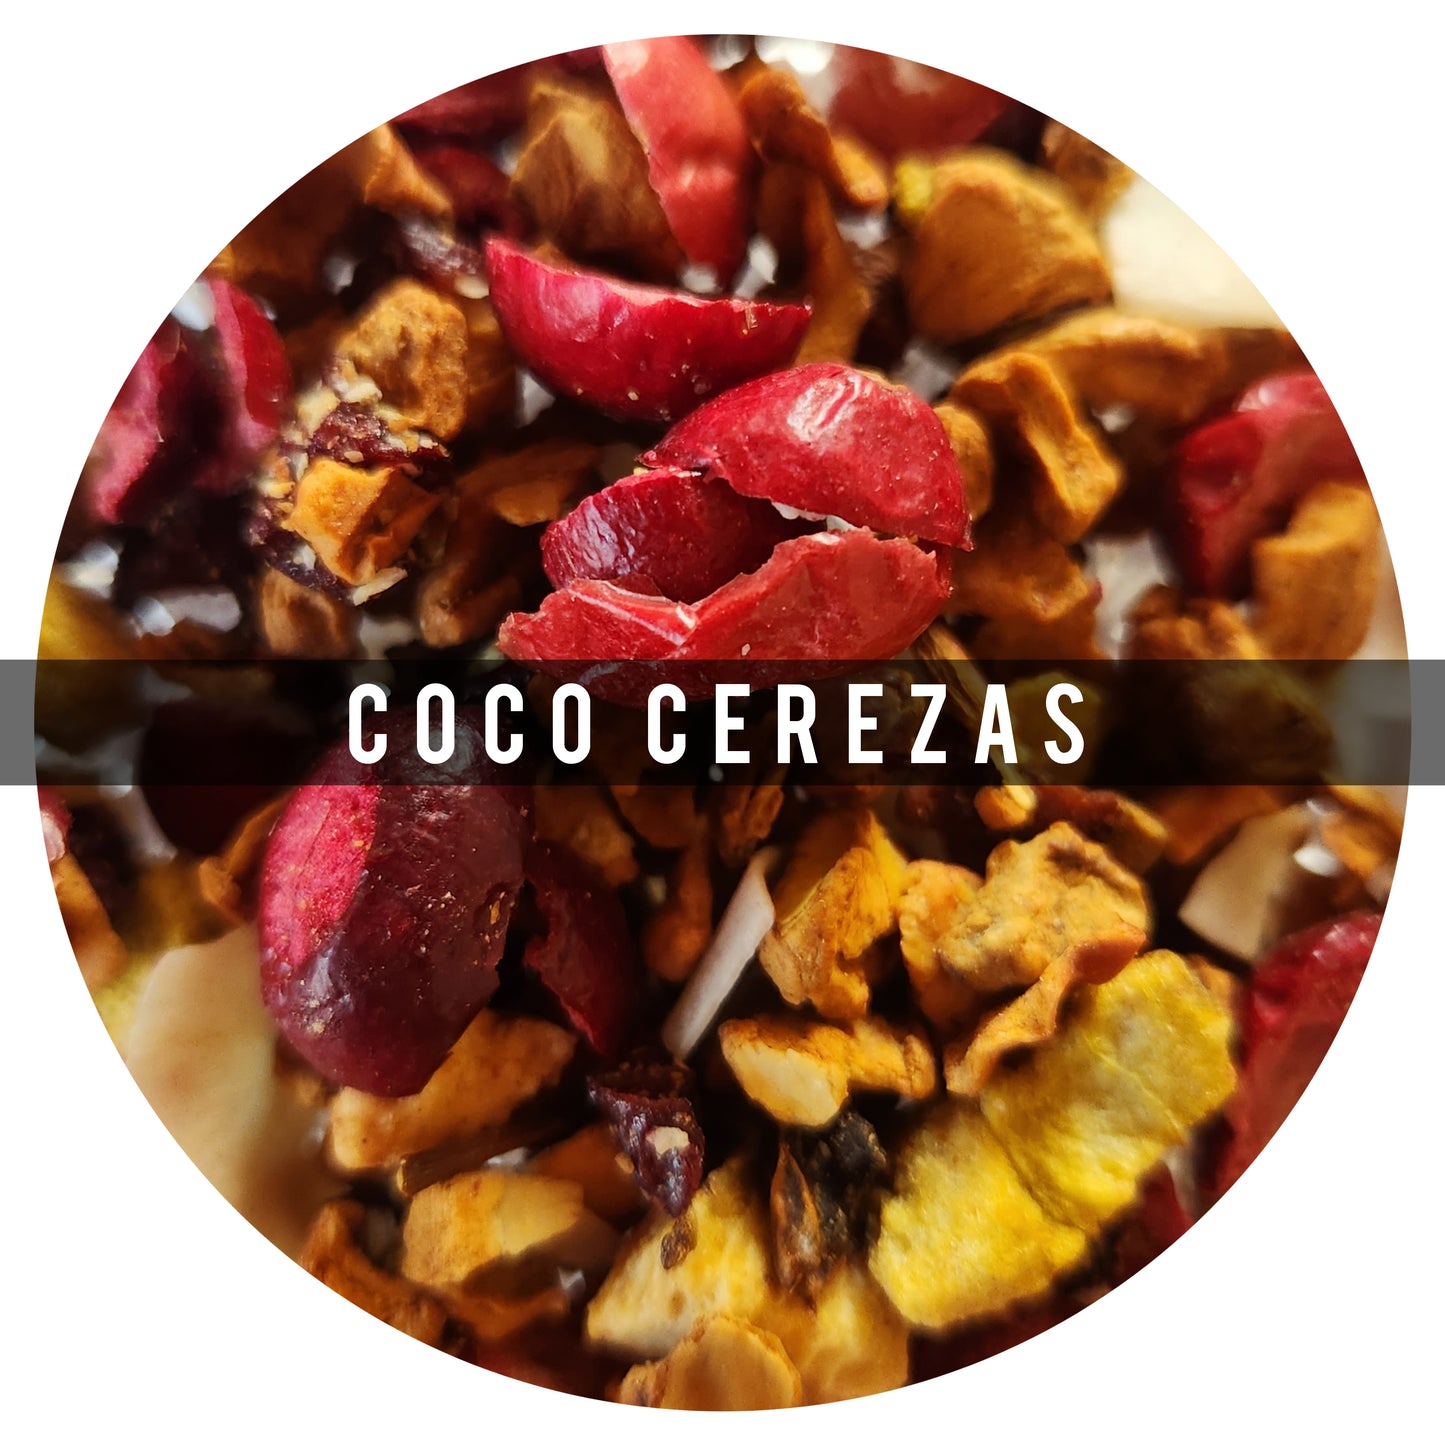 Coco Cereza 100g: Inspirada en una ensalada de frutas. Coco- Cereza es muy refrescante. El kiwi toma La delantera, en segundo lugar, la cereza dulce, mientras que la cremosidad del coco y la manzana permanecen en el fondo
Ingredientes Manzana, Kiwi, Aránd